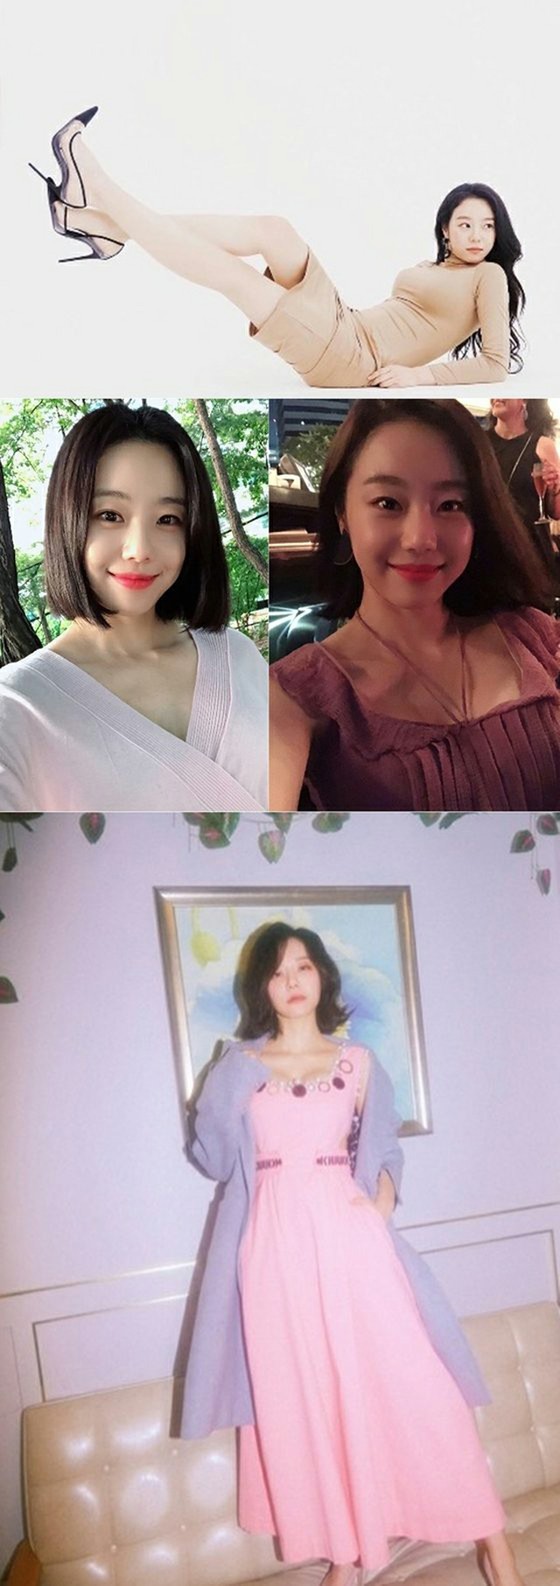 Nữ diễn viên "Brain sekunyo" Lee ShiWon lôi cuốn chương trình với DNA "Cha là cựu chủ tịch MENSA, con là Đại học Seoul"